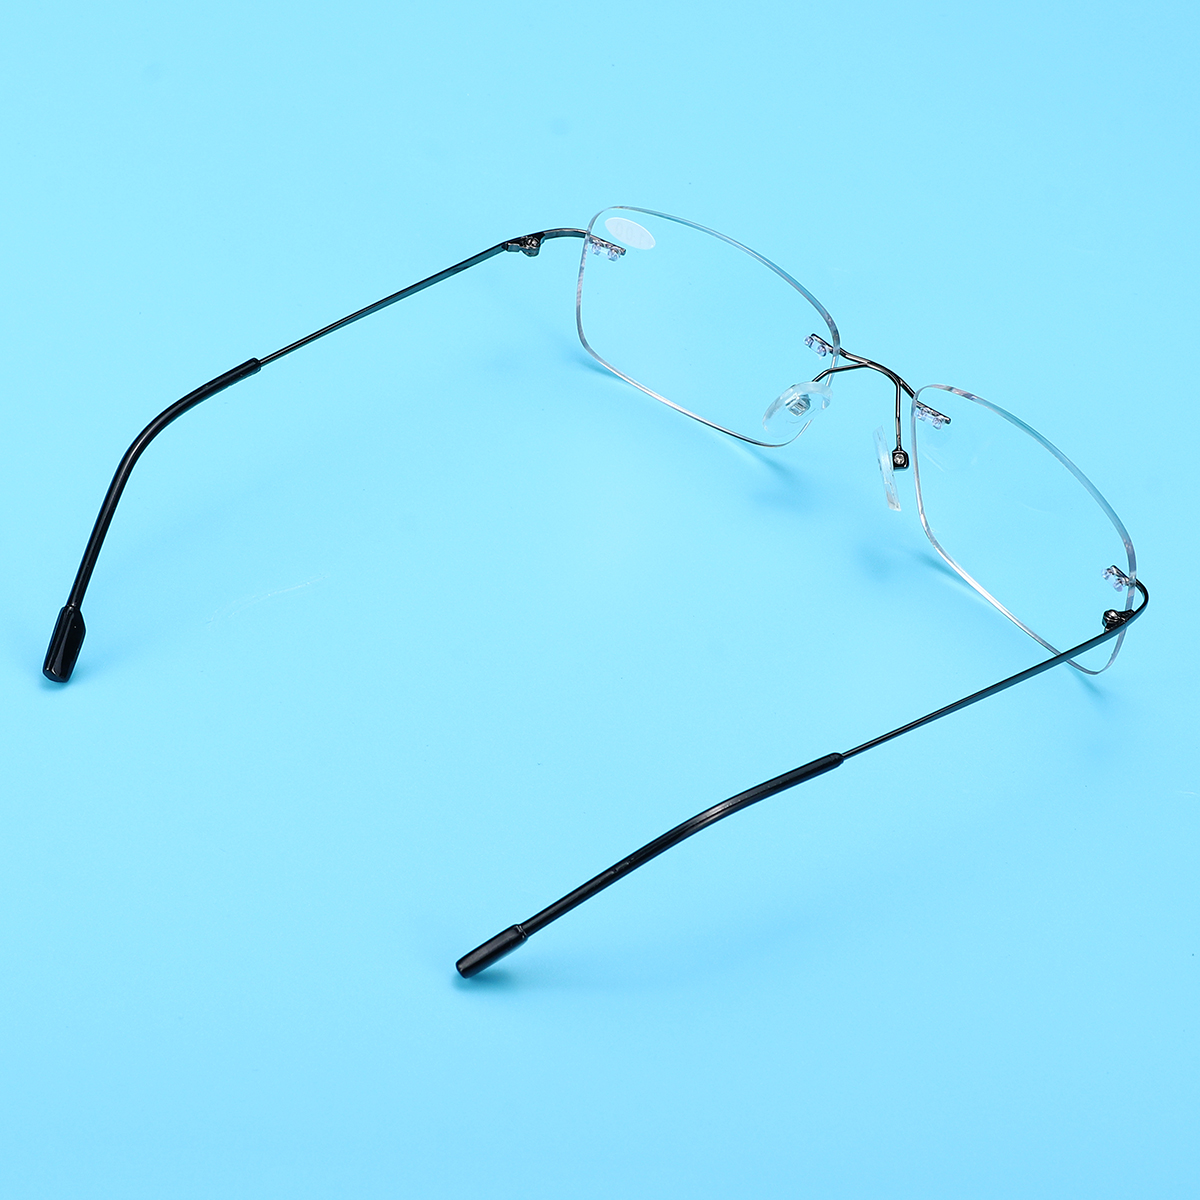 Half-Metal-Rim-Multi-Focus-Progressive-Reading-Glasses-1415467